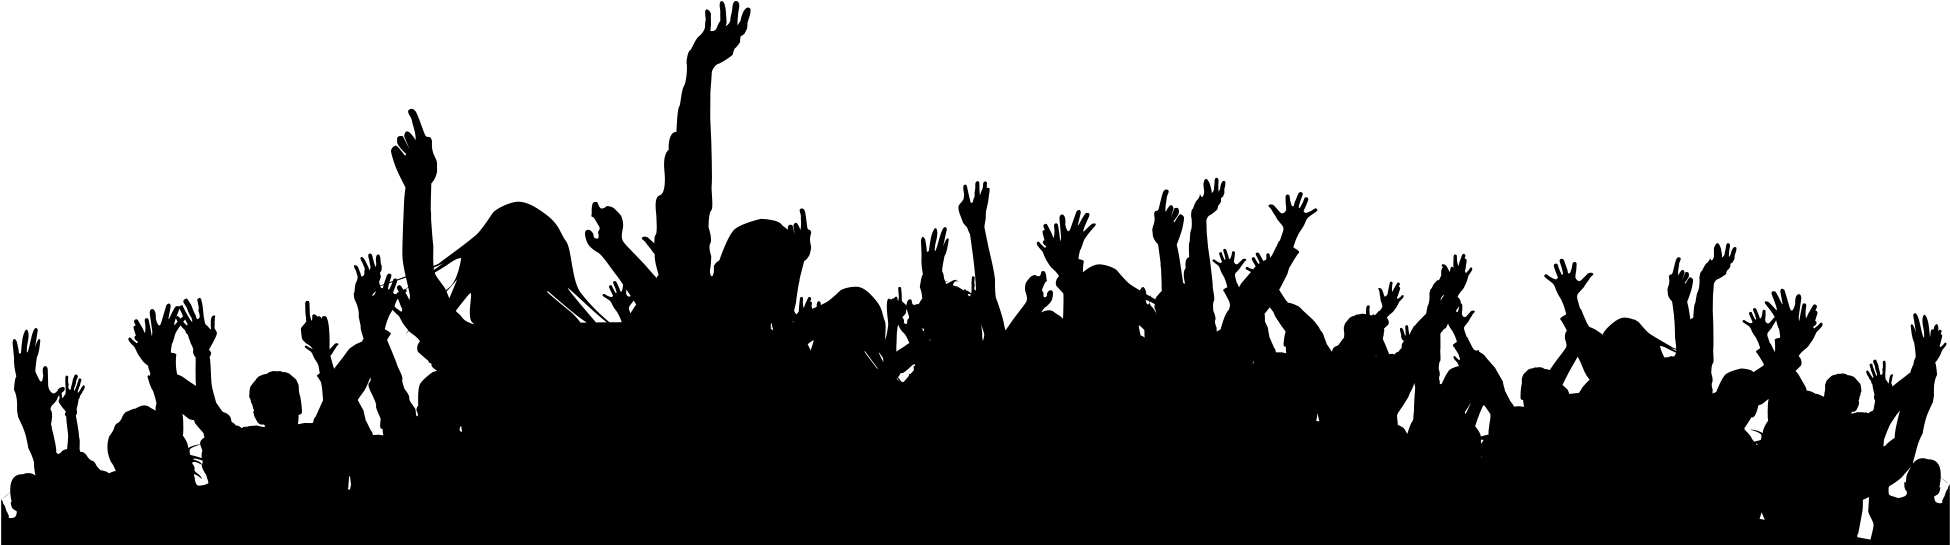 Menigte silhouet PNG geïsoleerde Transparante afbeelding